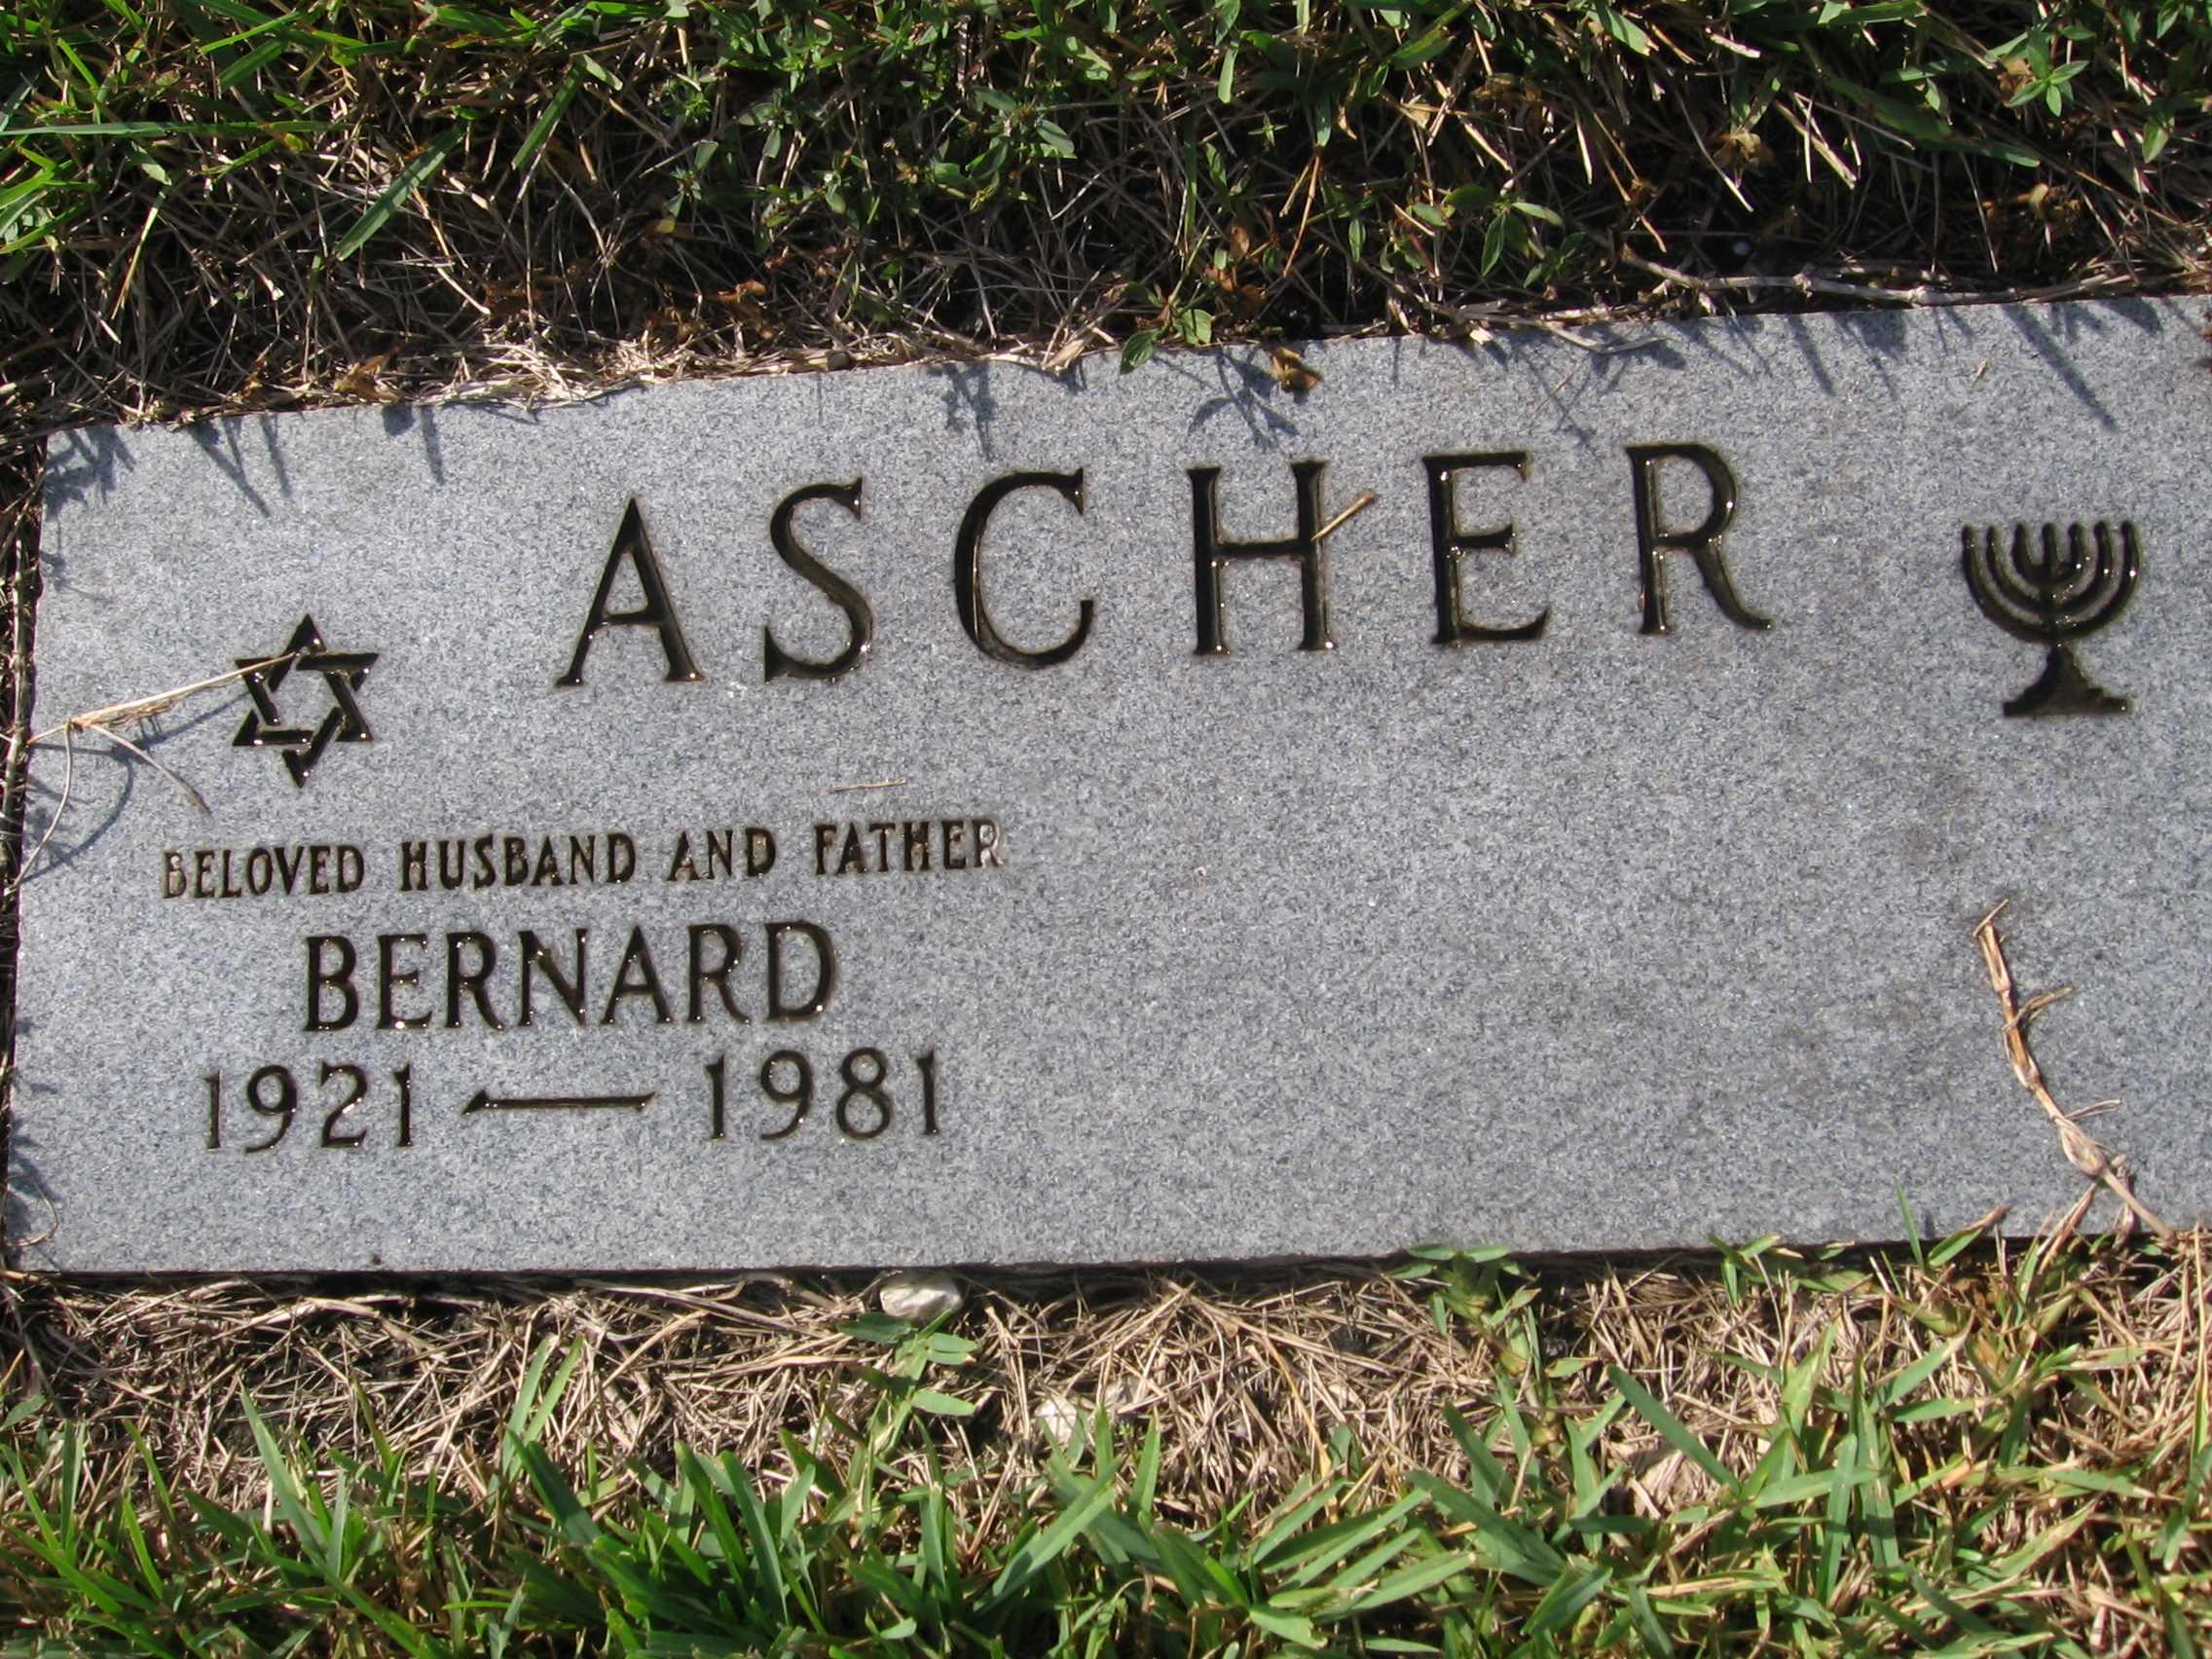 Bernard Ascher